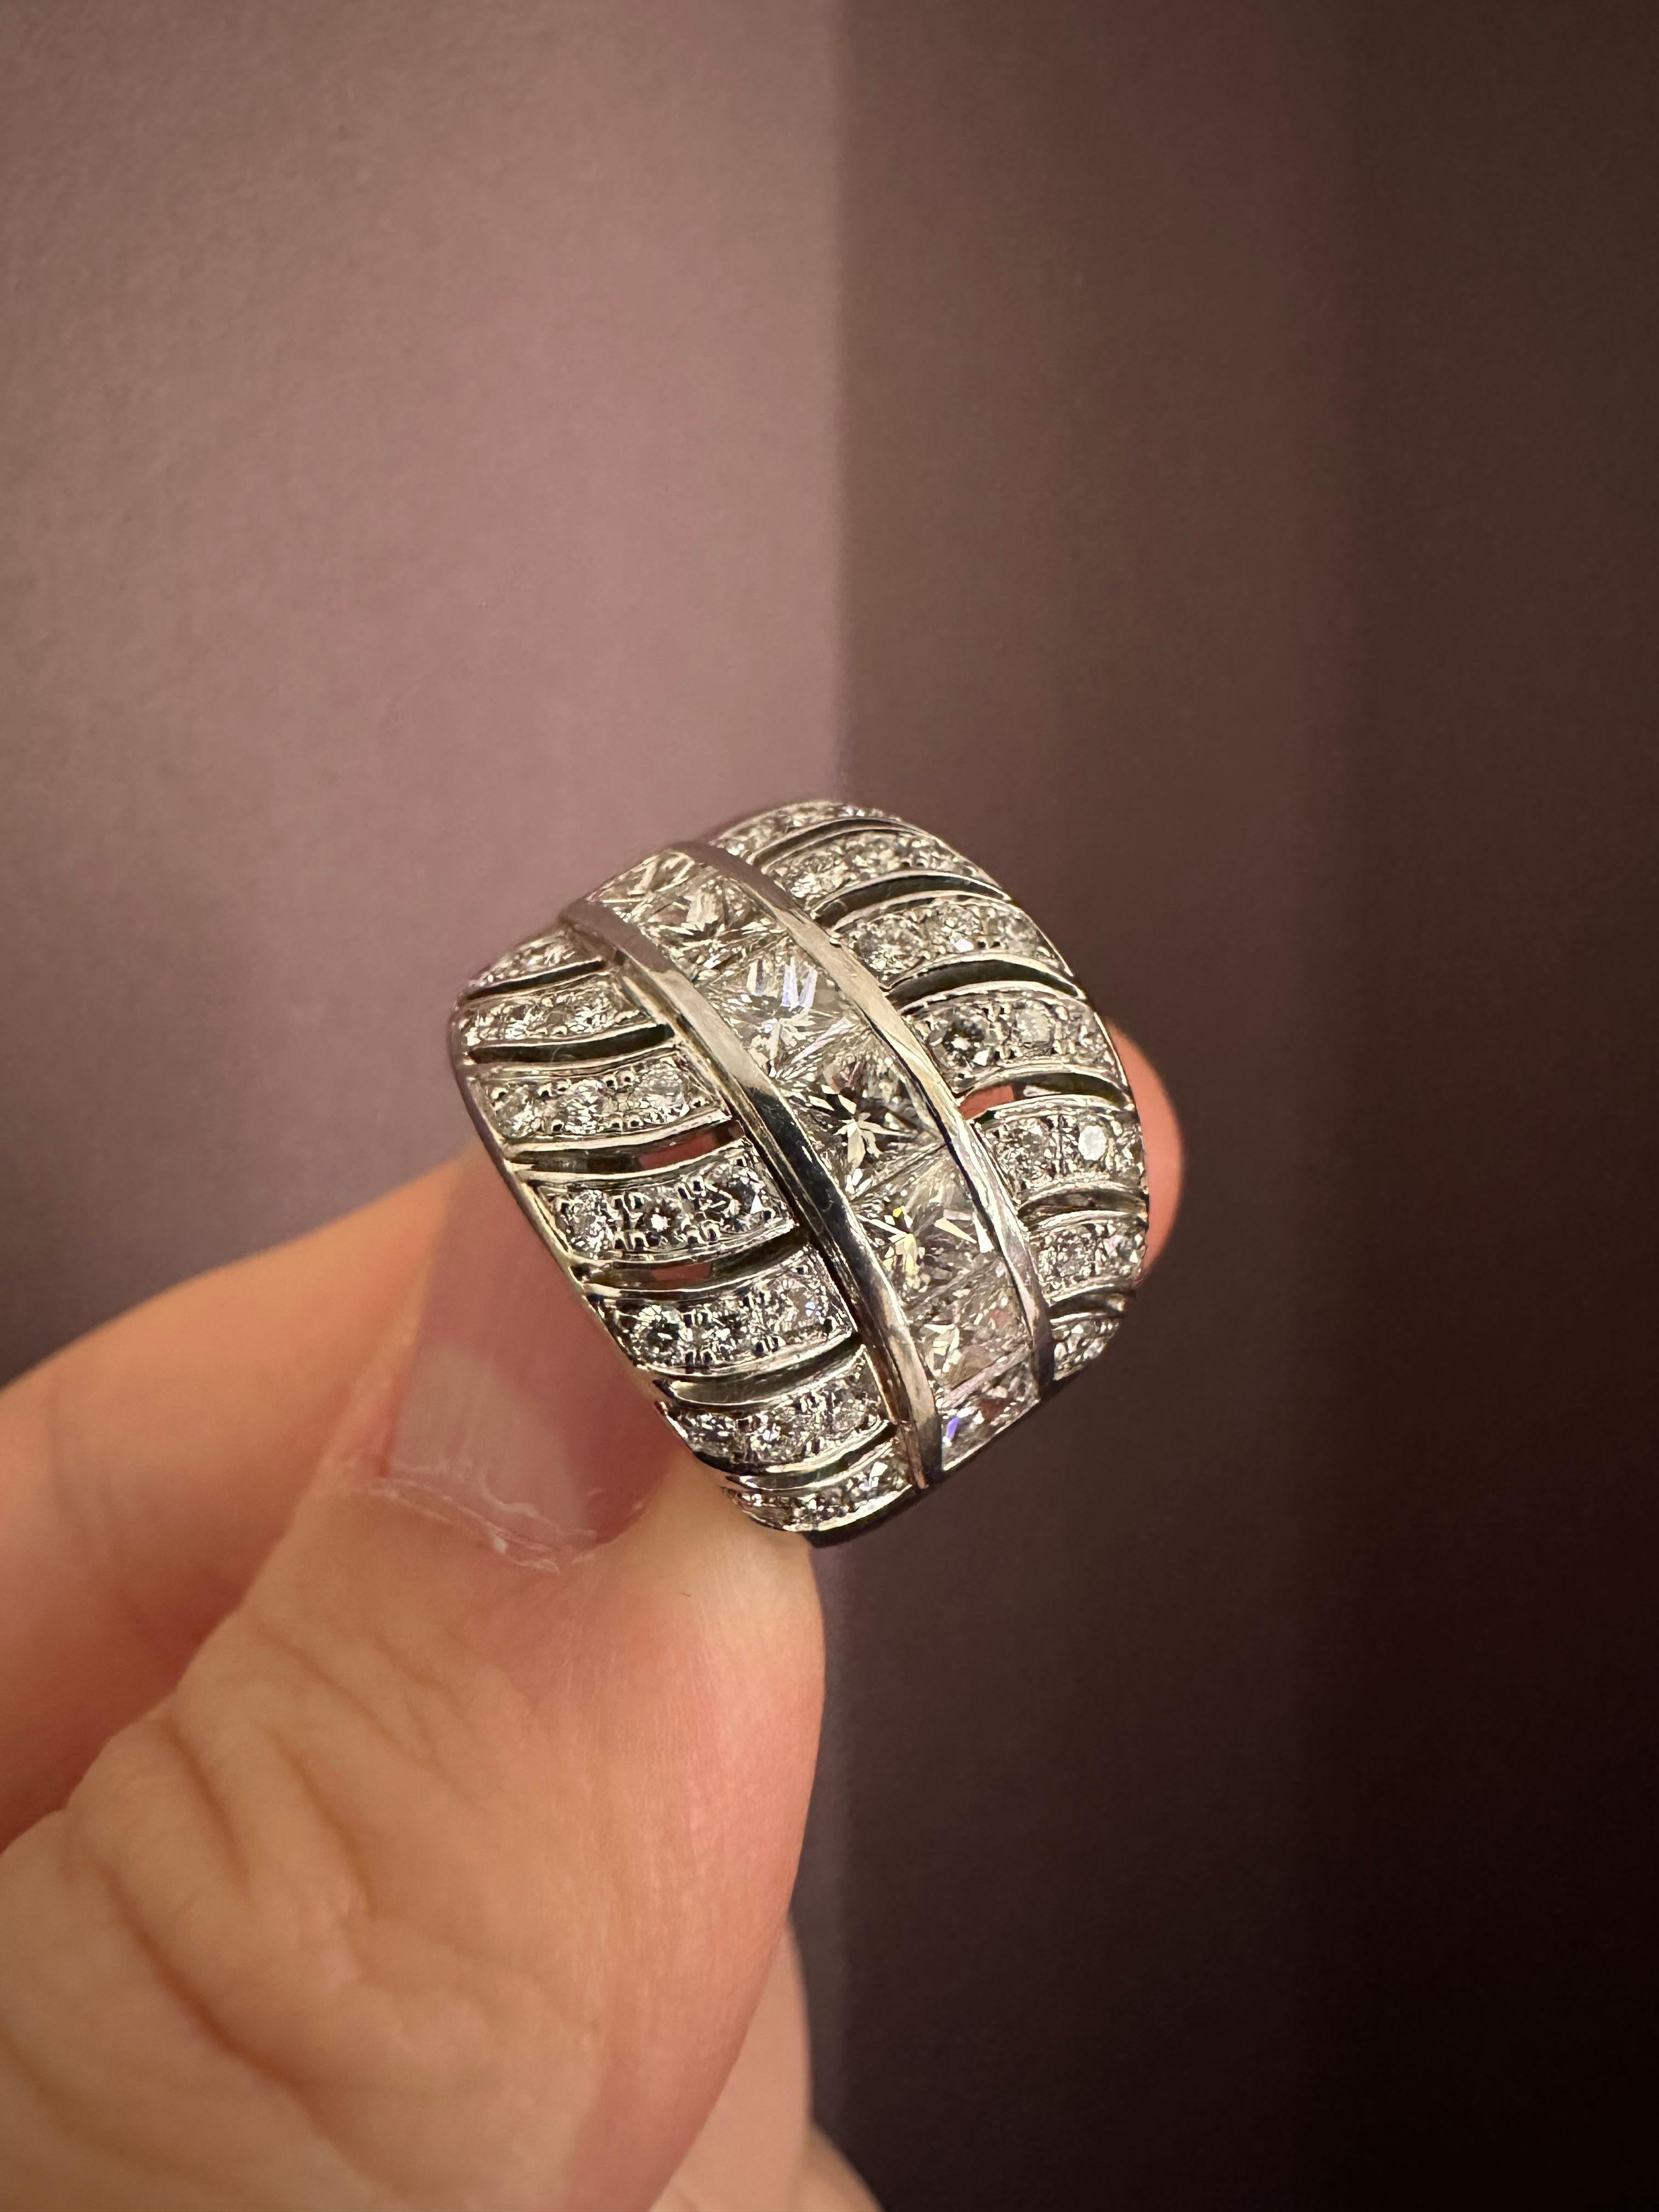 Rosior Vintage Cocktail Ring aus Platin mit:
- 7 Diamanten im Princess-Schliff mit einem Gewicht von 1,44 ct;
- 42 Diamanten im Brillantschliff mit einem Gewicht von 0,72 ct.
G-VVS.
Einzigartiges Stück.
Von der portugiesischen Prüfstelle als 950